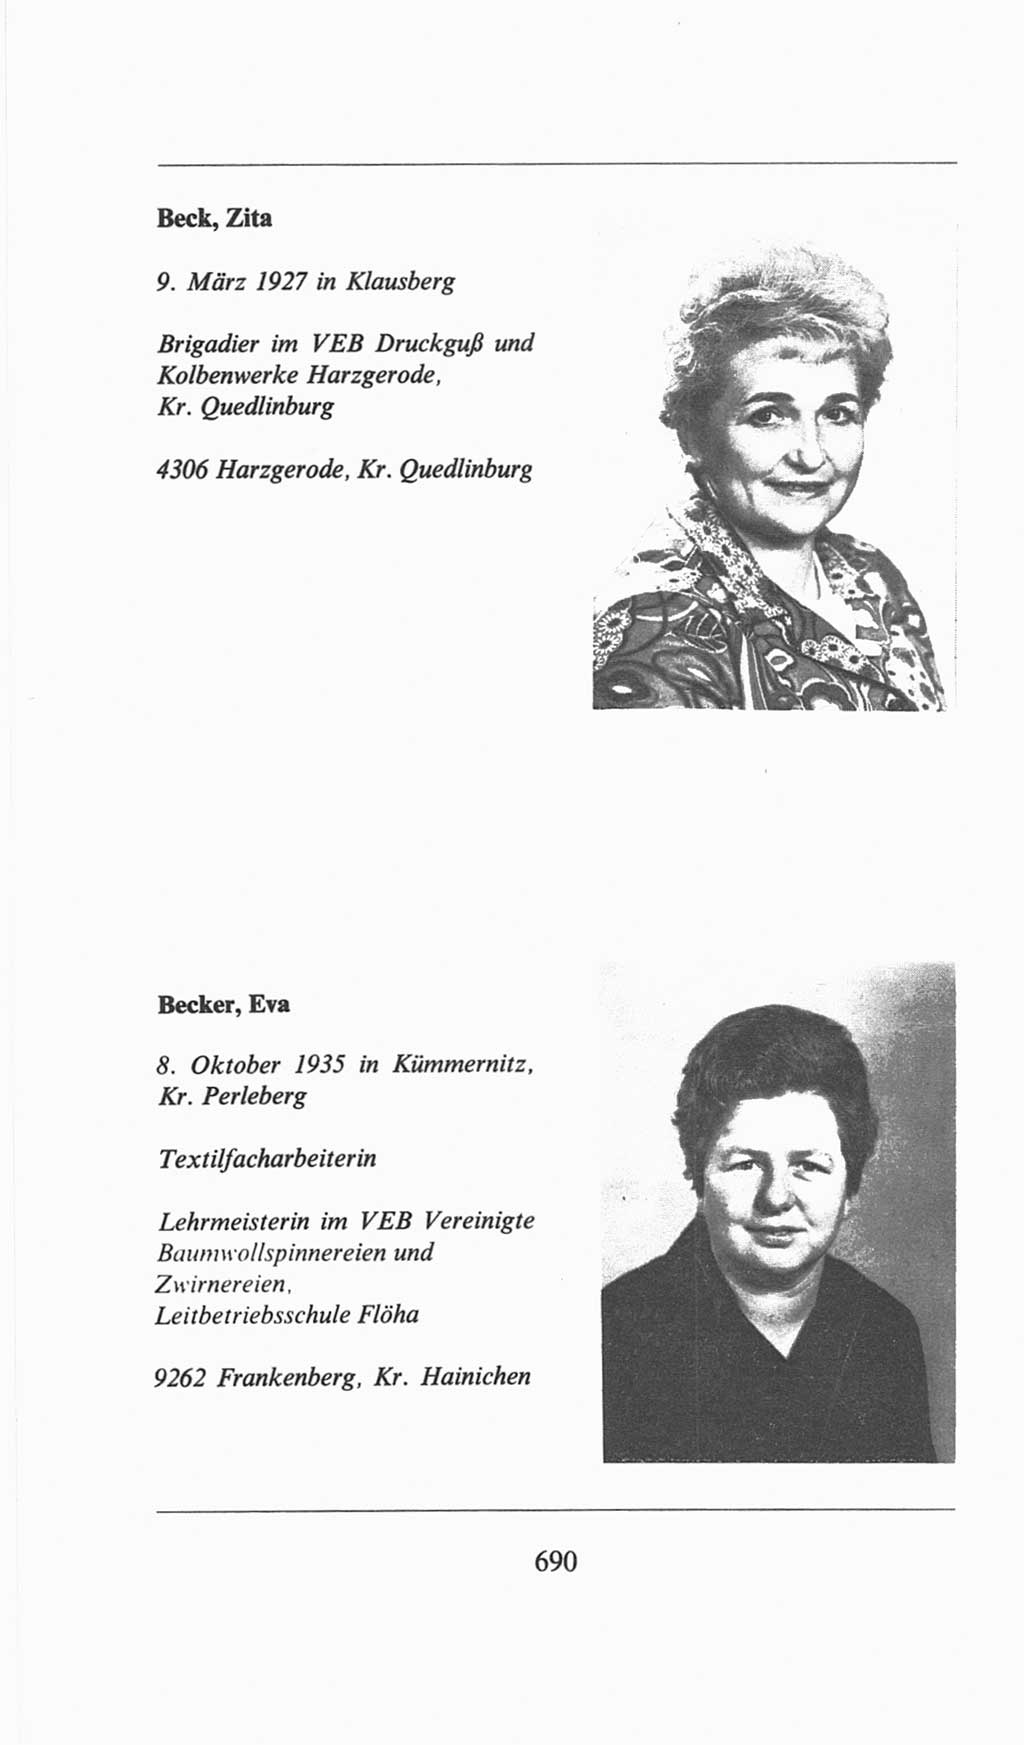 Volkskammer (VK) der Deutschen Demokratischen Republik (DDR), 6. Wahlperiode 1971-1976, Seite 690 (VK. DDR 6. WP. 1971-1976, S. 690)